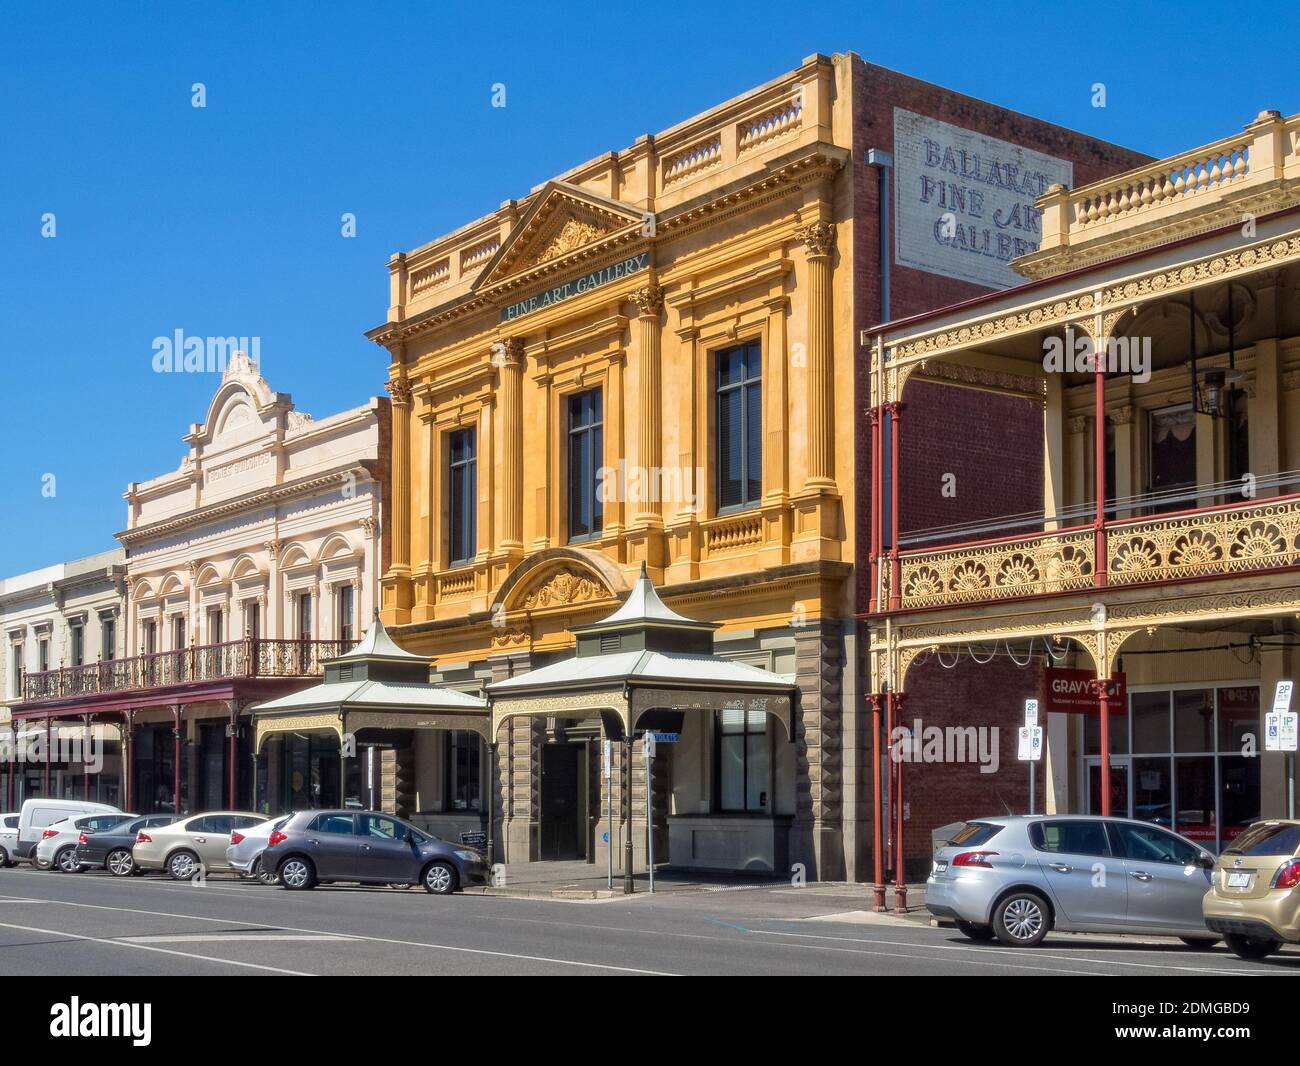 Die Kunstgalerie von Ballarat ist die älteste und größte regionale Kunstgalerie Australiens - Ballarat, Victoria, Australien Stockfoto